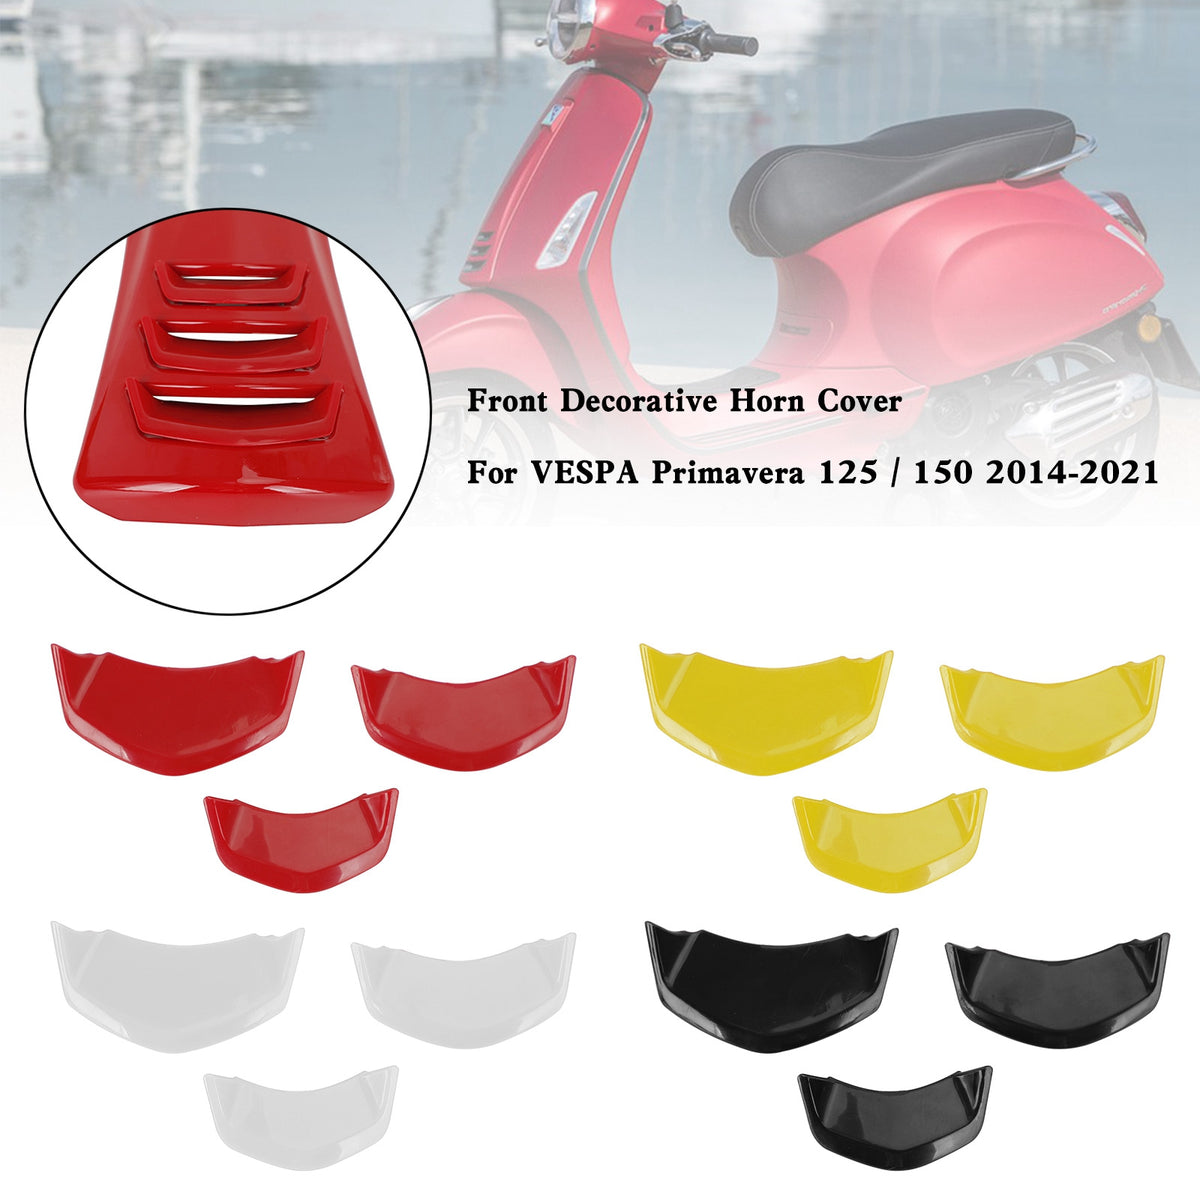 Front Decorative Horn Cover For VESPA Sprint Primavera 125/150 2014-2021